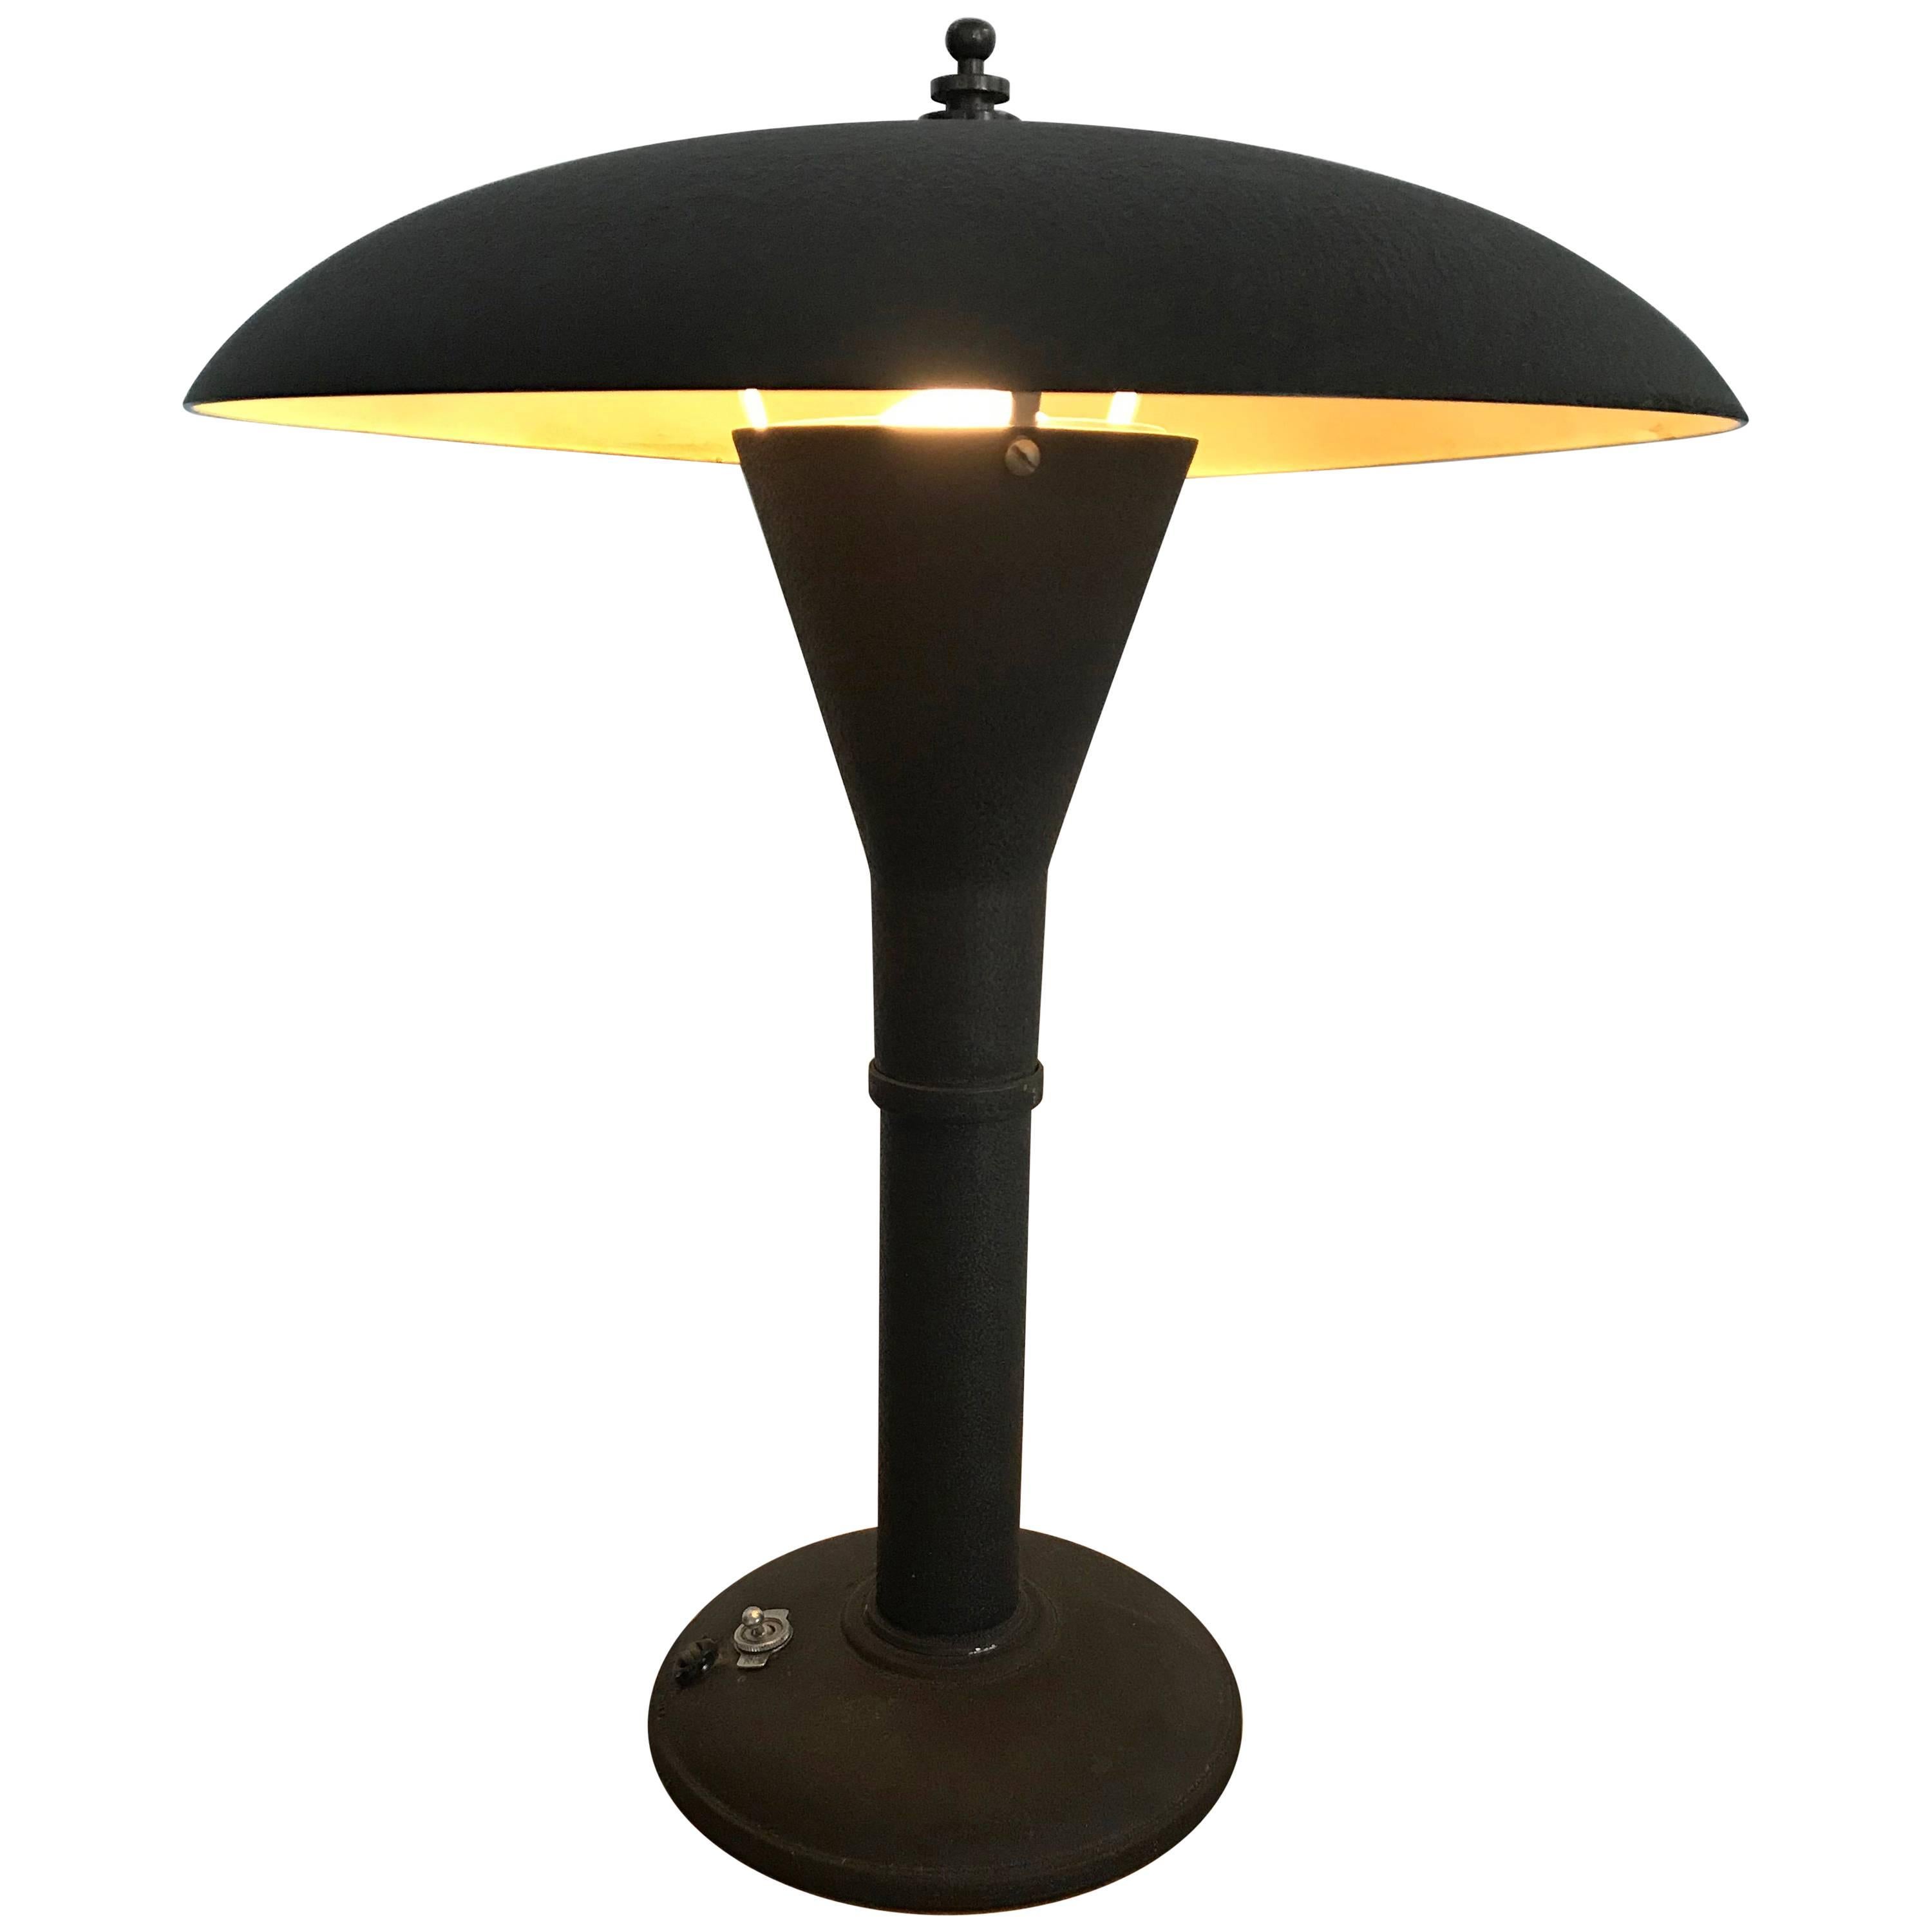 Classic Art Deco Dome Desk Lamp Smith, 1930 8217 S Art Deco Table Lamps